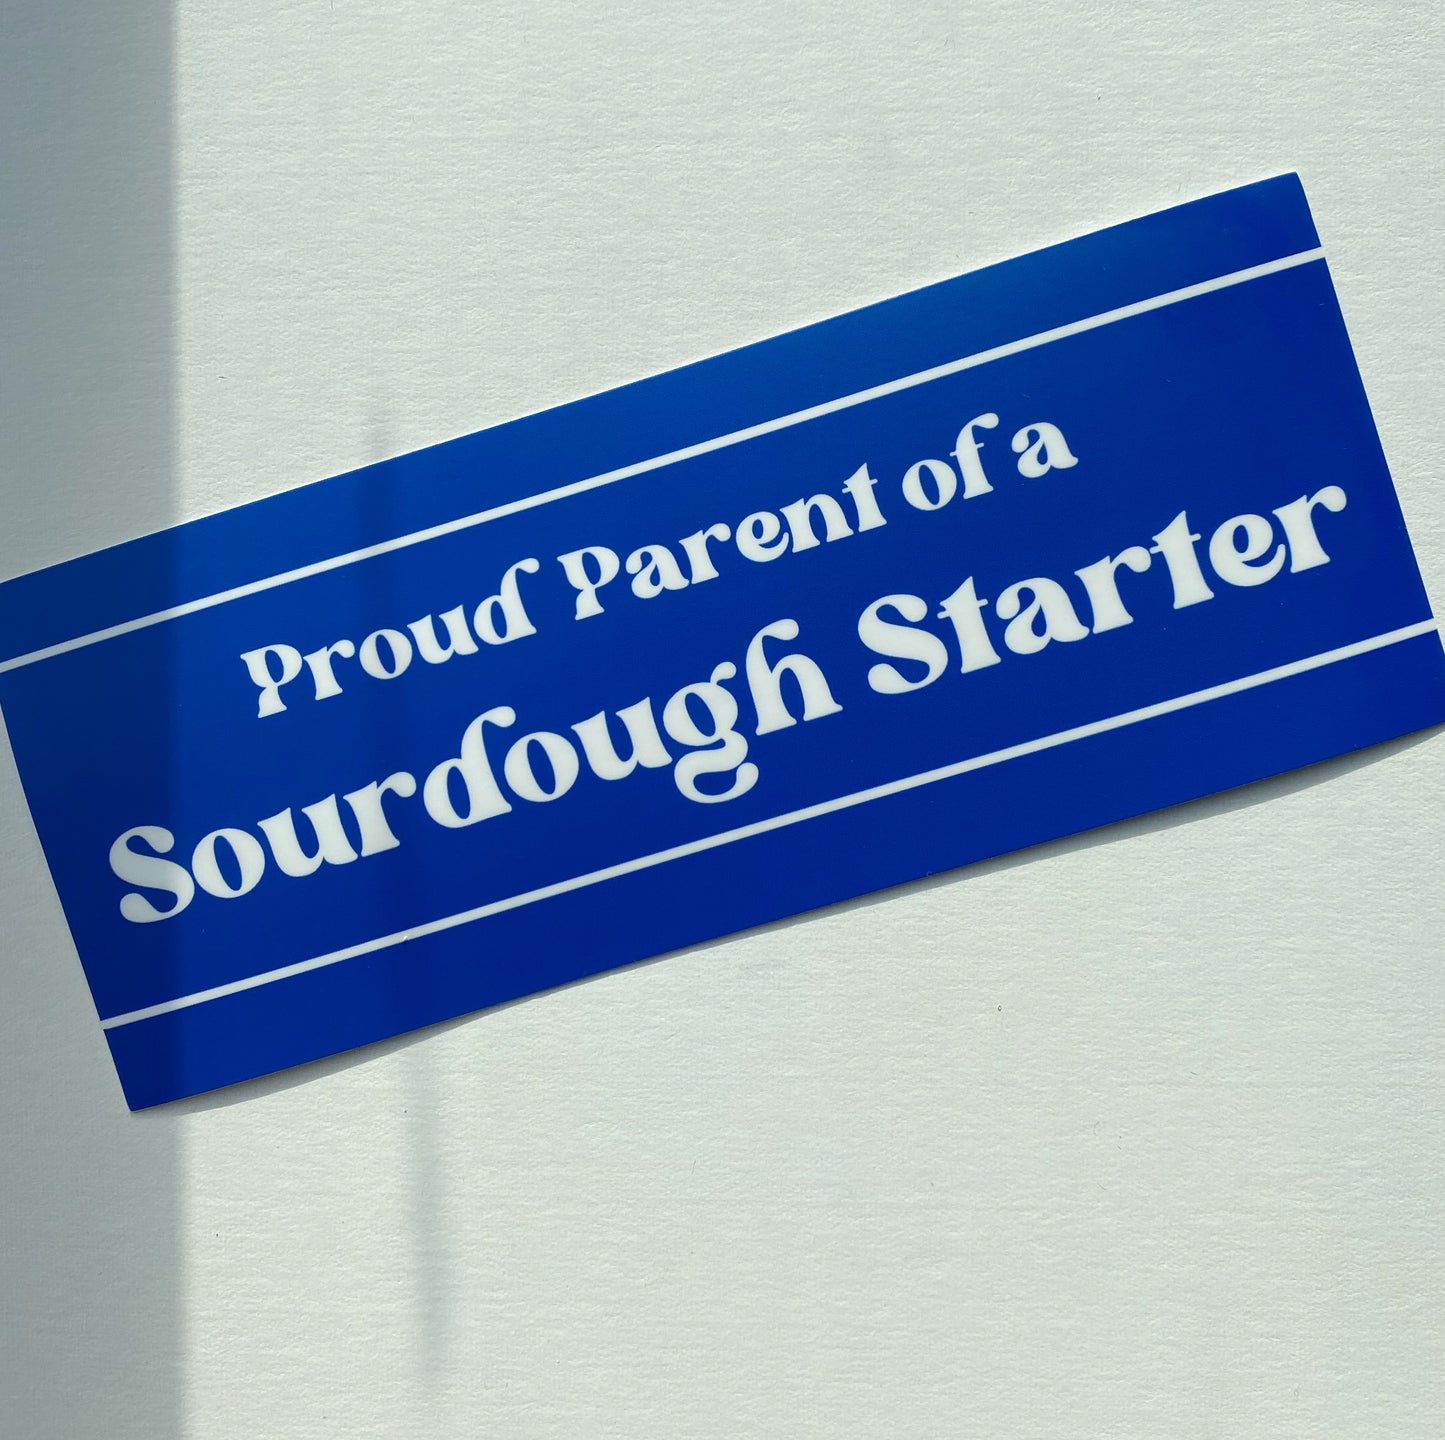 Proud Parent of a Sourdough Starter Bumper Sticker